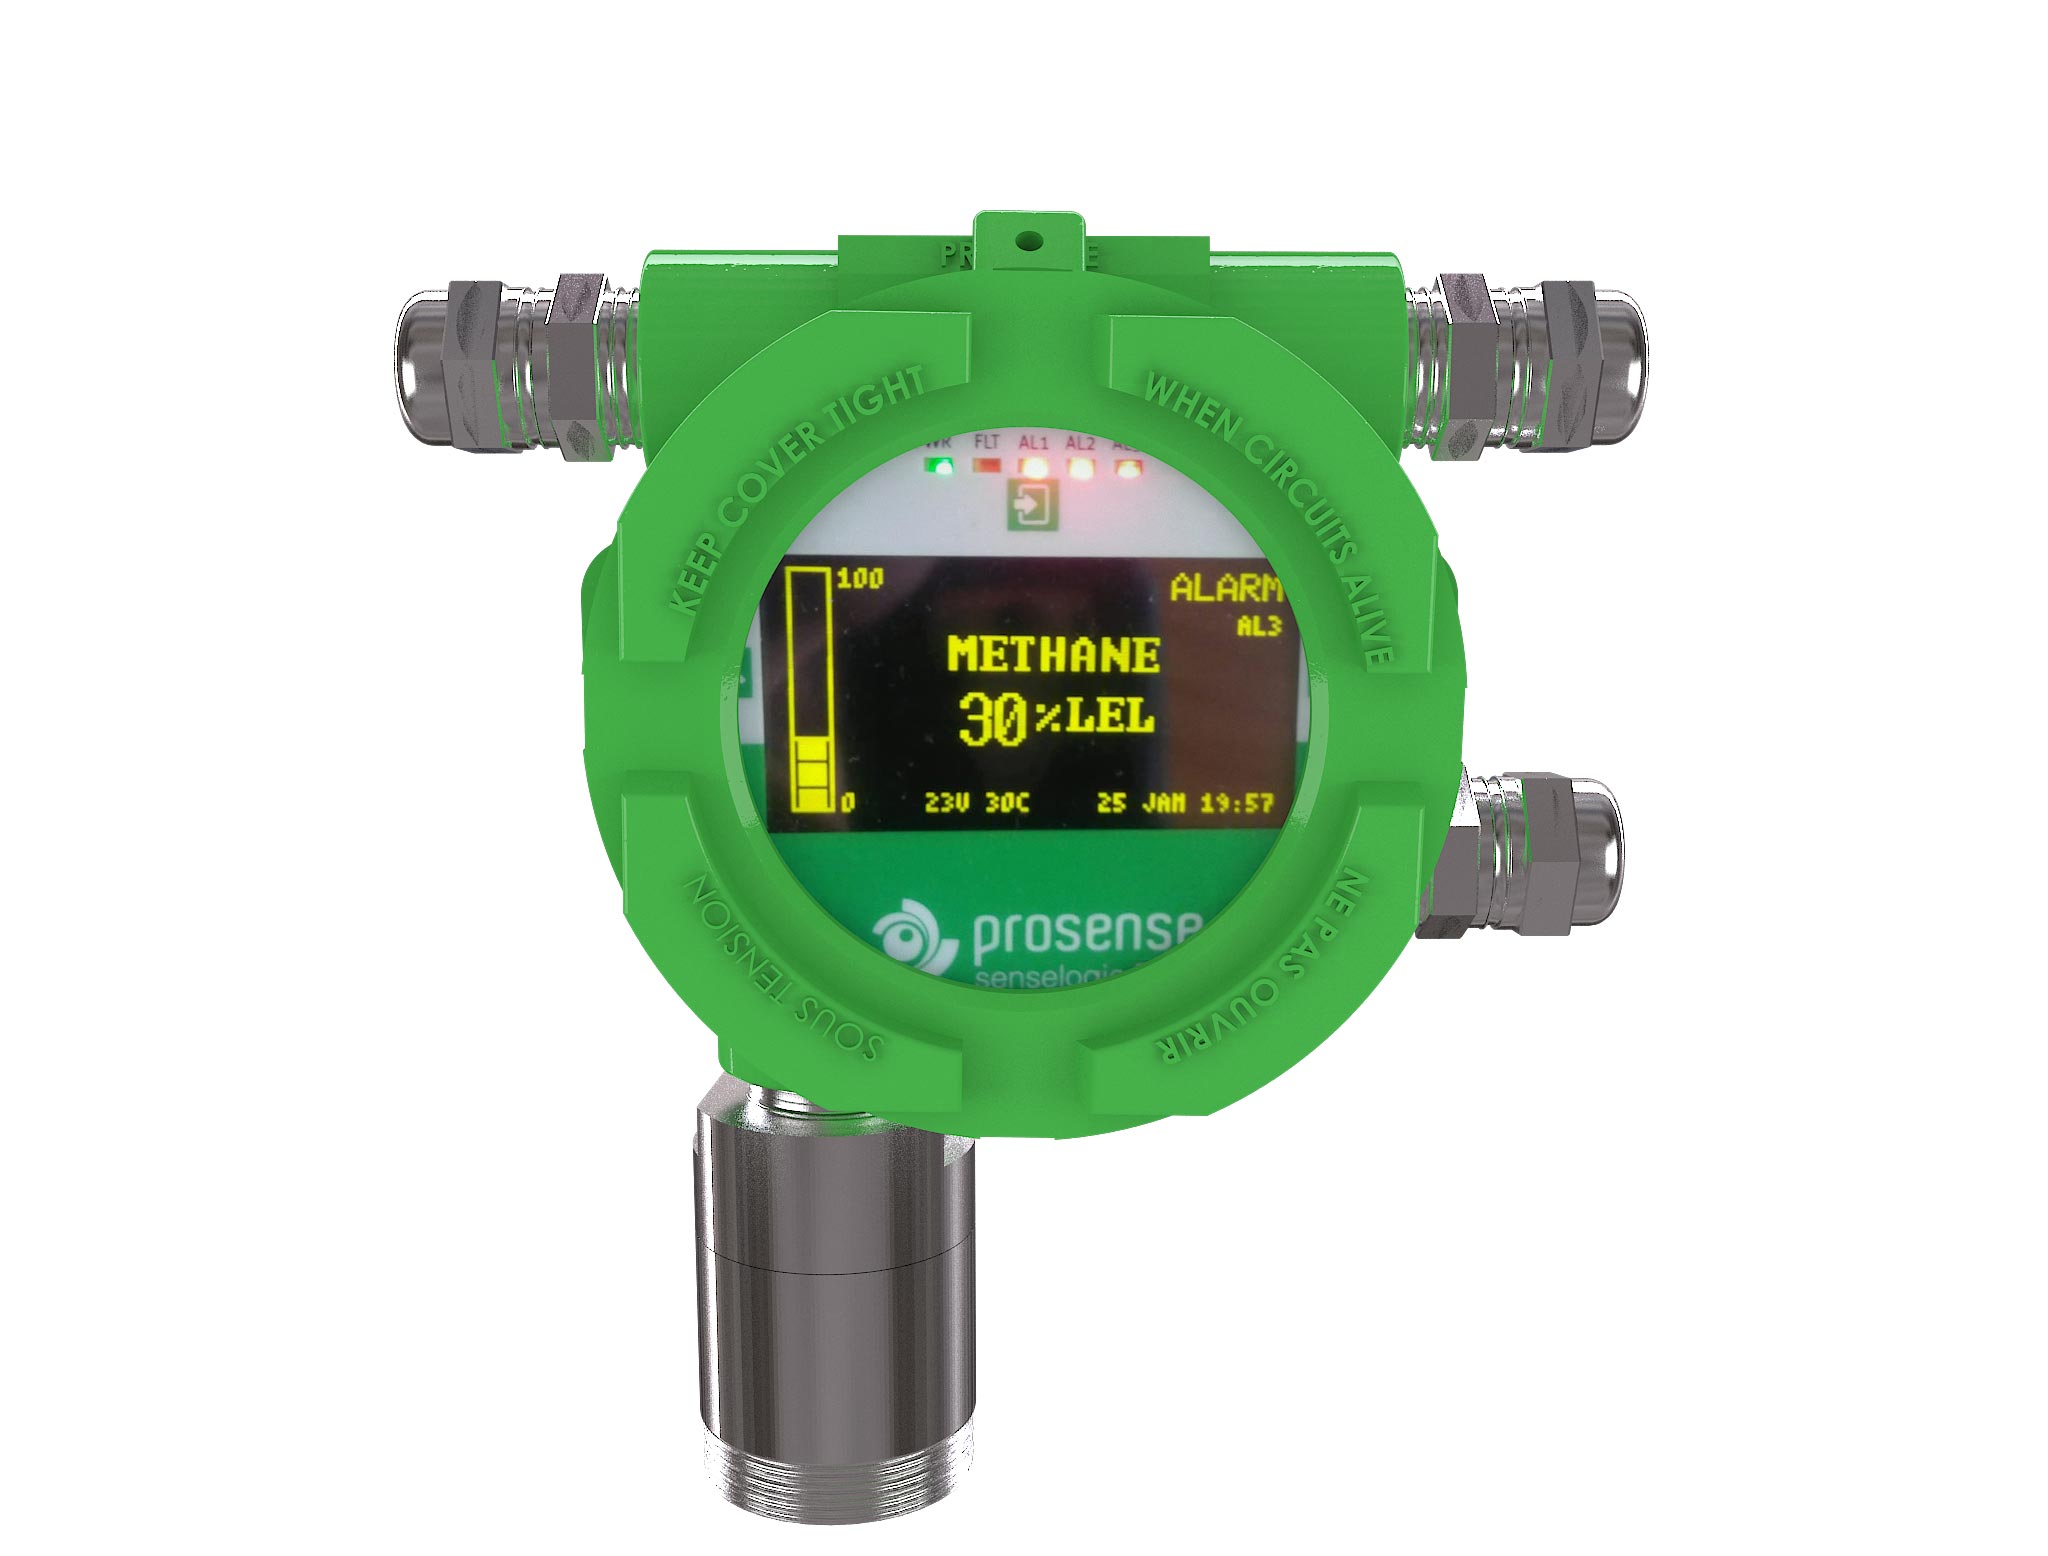 PQD-7534 Hydrogen Cyanide Gas Detector